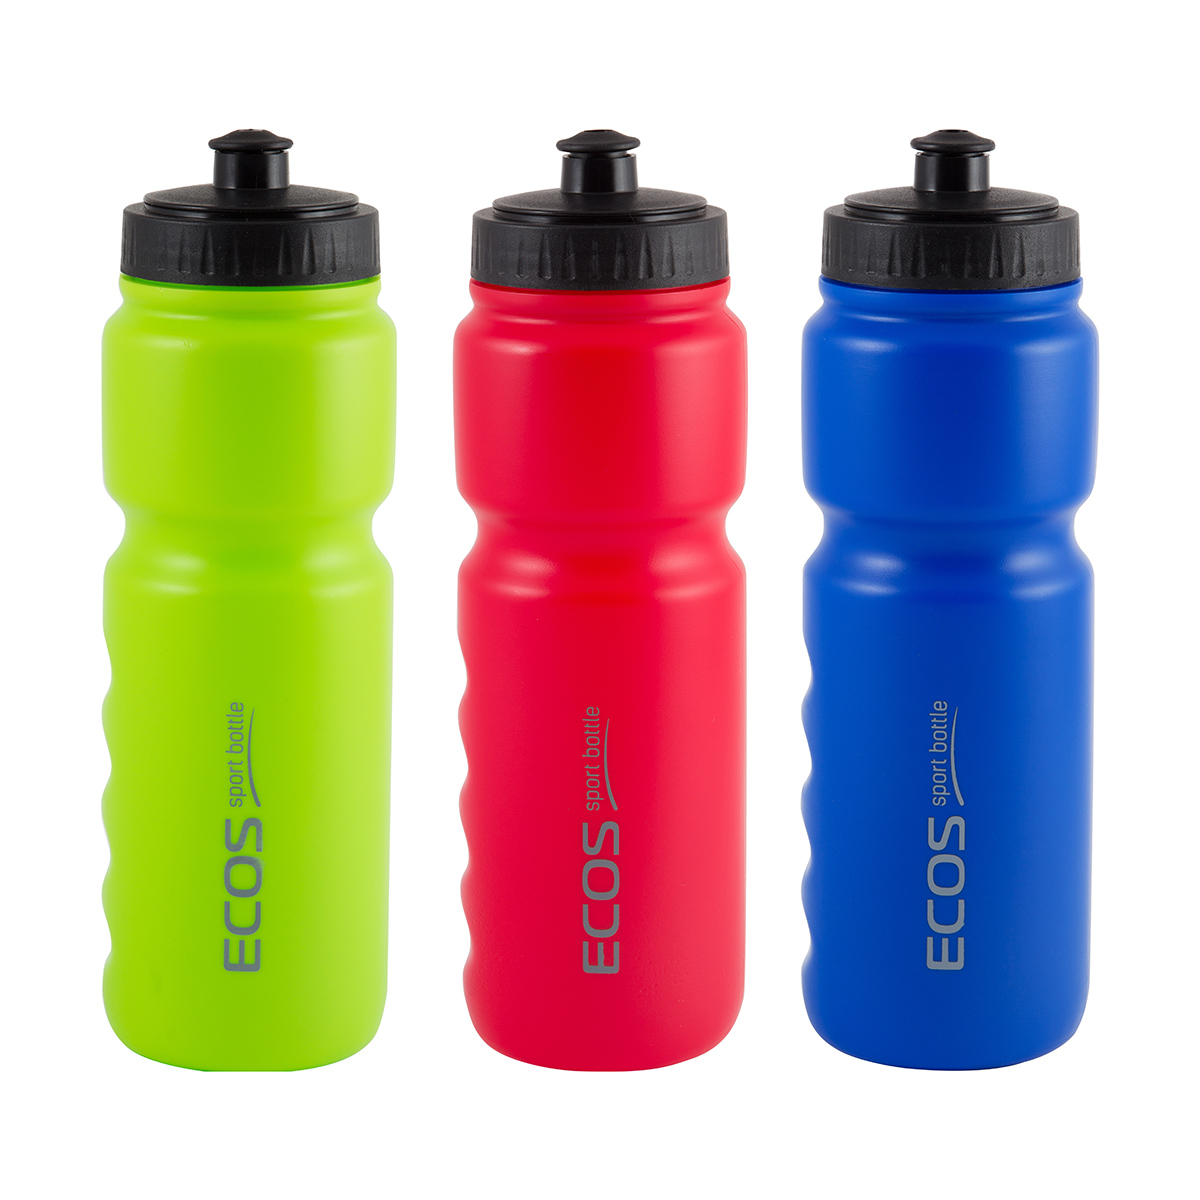 Легкая бутылка для воды. Велосипедная бутылка для воды Ecos HG-2015, 800мл. Бутылка для воды велосипедная 850мл Ecos. Спортивная бутылка, sportbottle HG-2015 спортивная (велосипедная) 800мл Ecos, 800л. UFC Exxe спортивная бутылка.